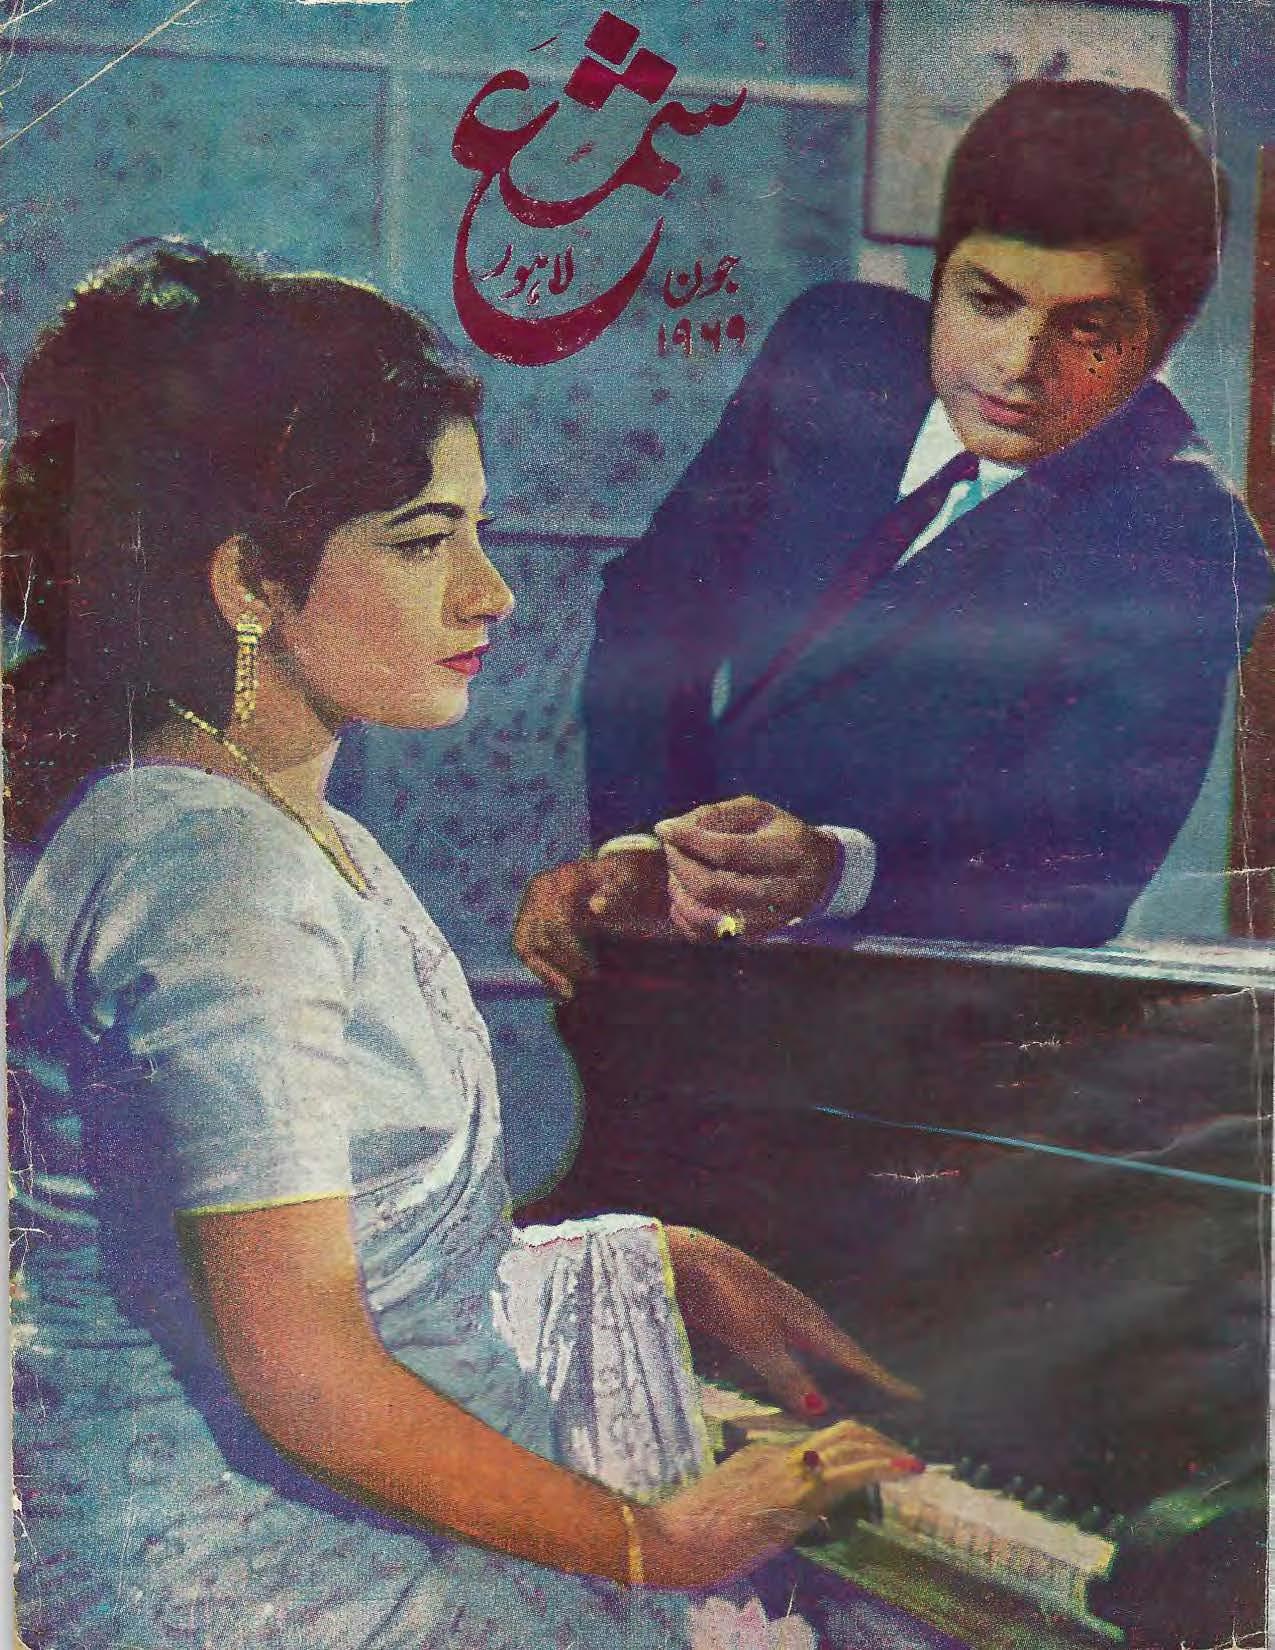 Shama (Jun, 1969)